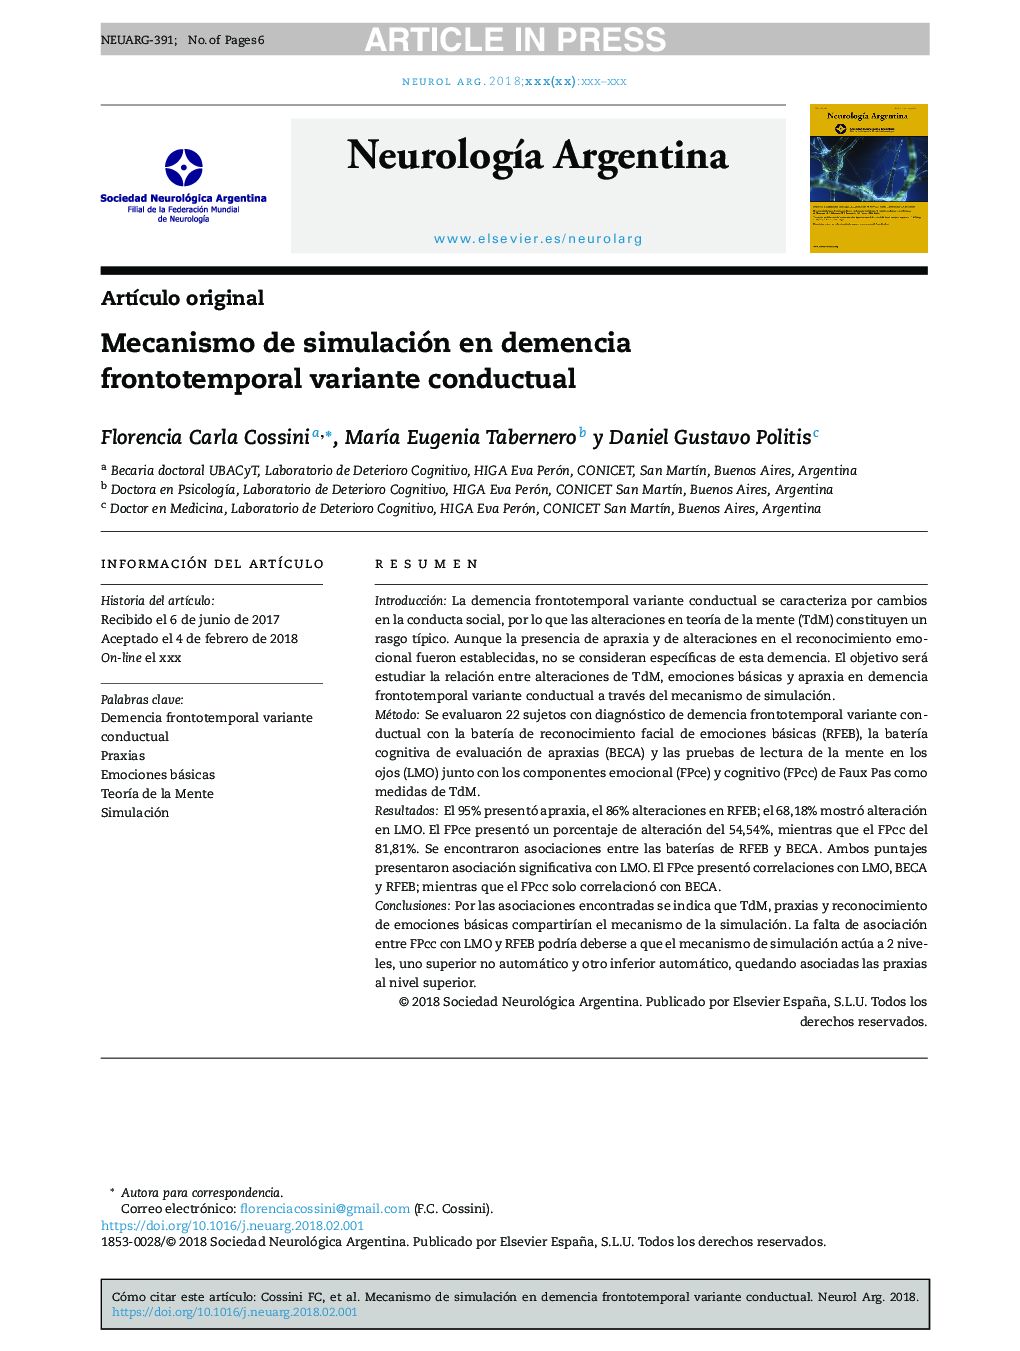 Mecanismo de simulación en demencia frontotemporal variante conductual